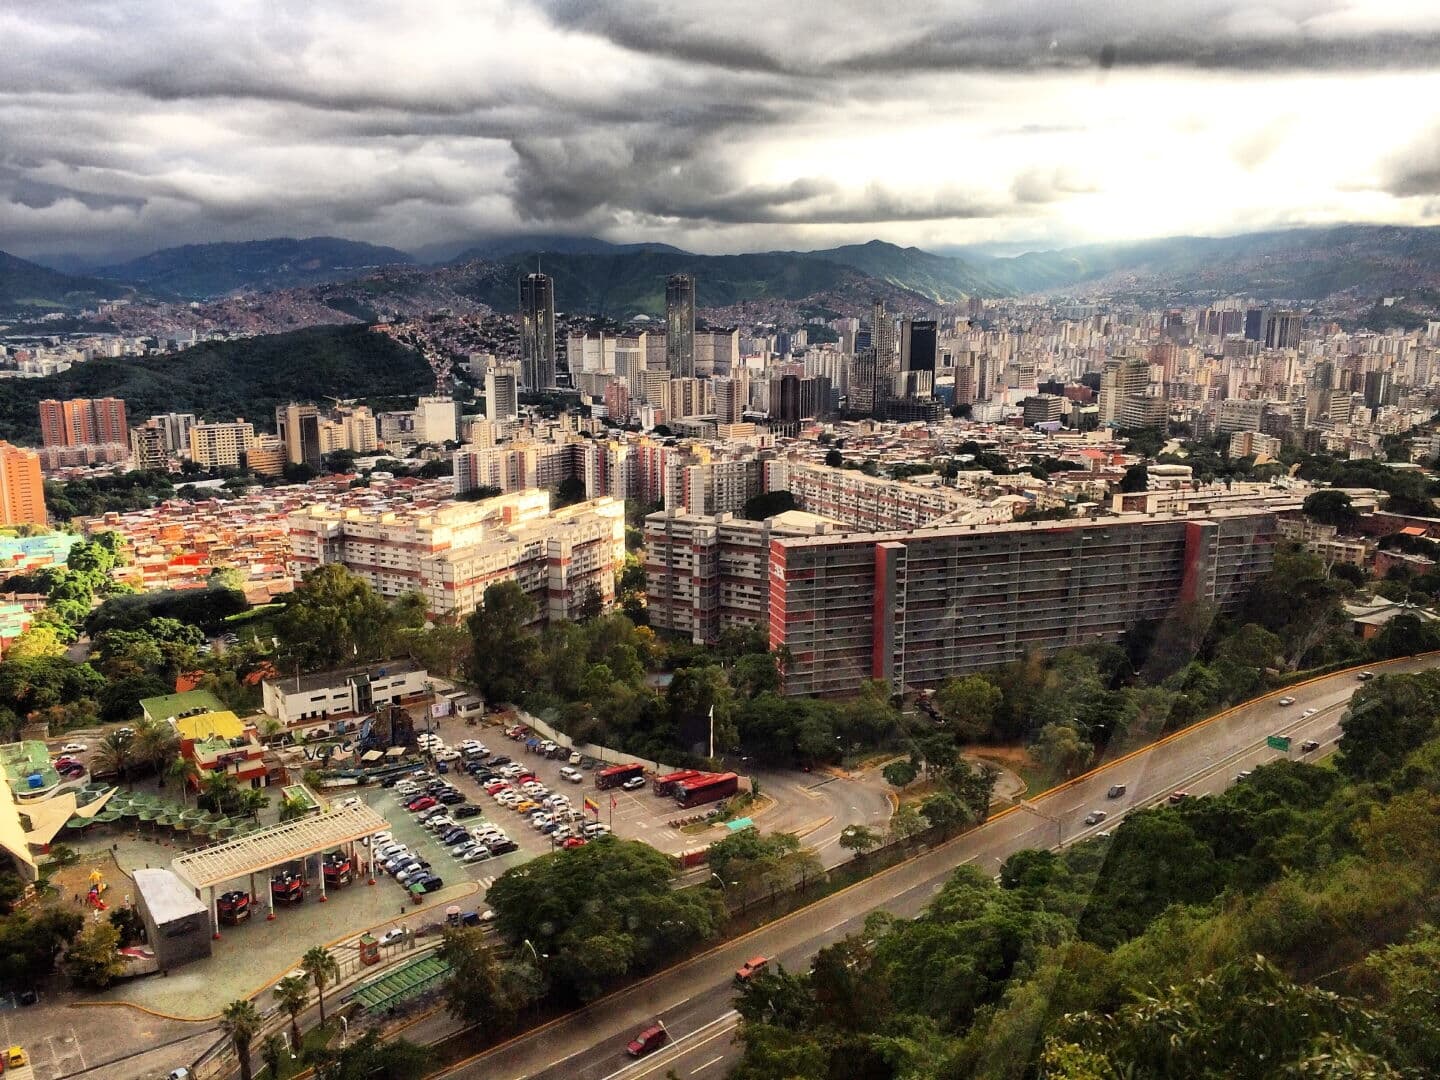 Caracas photo